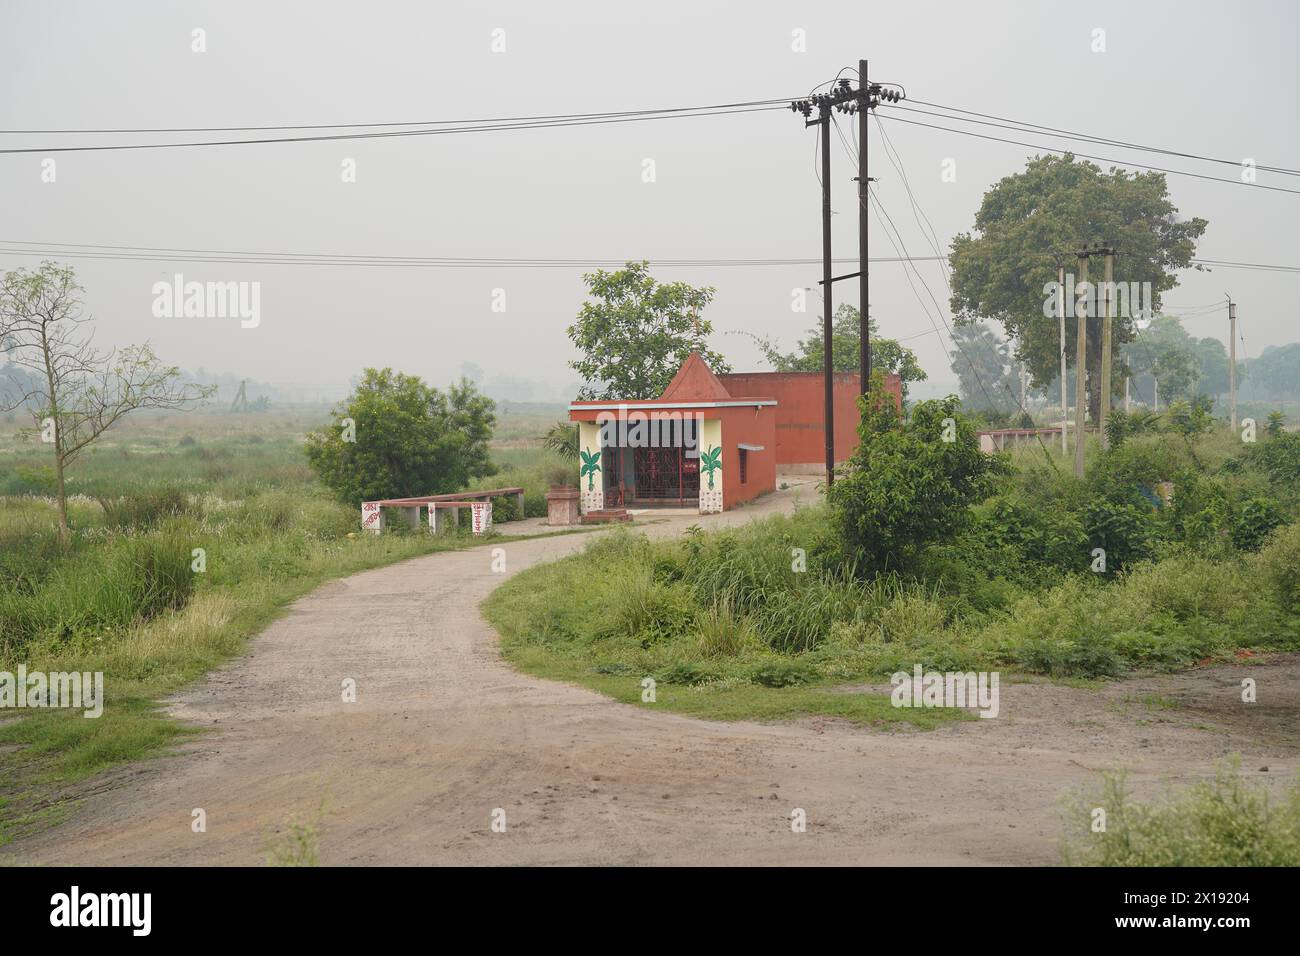 Das umstrittene Land der Tata Nano Automobilfabrik. Neben NH-16. Singur im Bezirk Hoodly, Westbengalen, Indien. Stockfoto